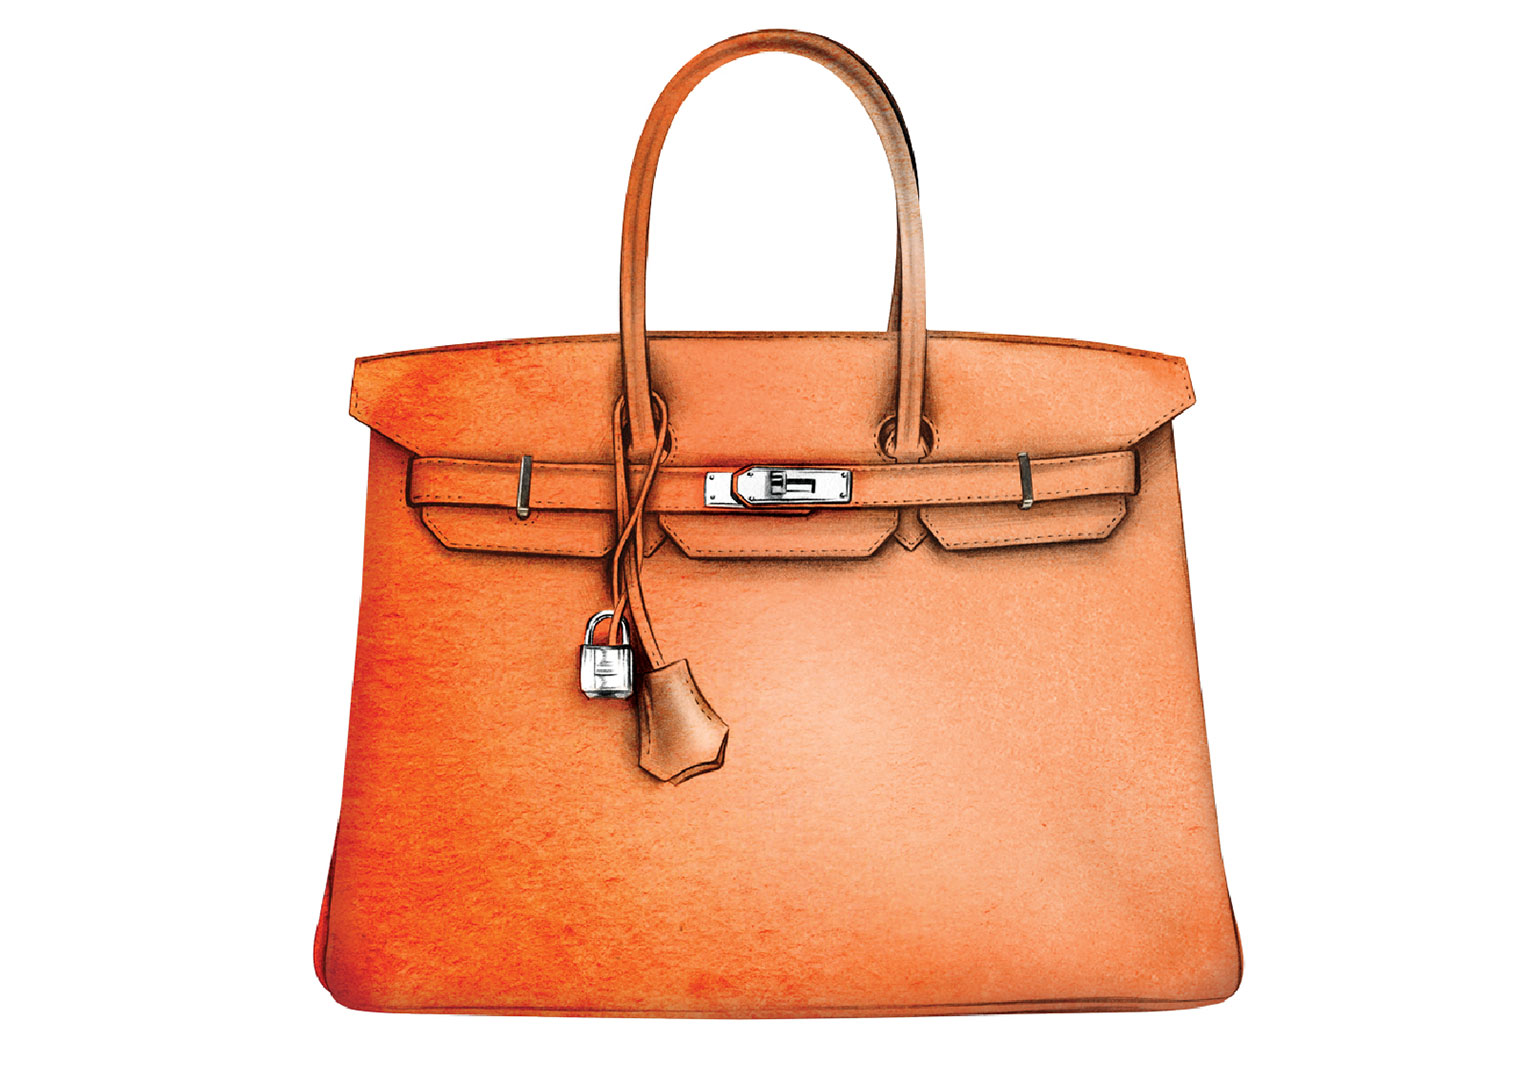 filter tide Brave It bag : les sacs de luxe les plus vendus - Femme Actuelle